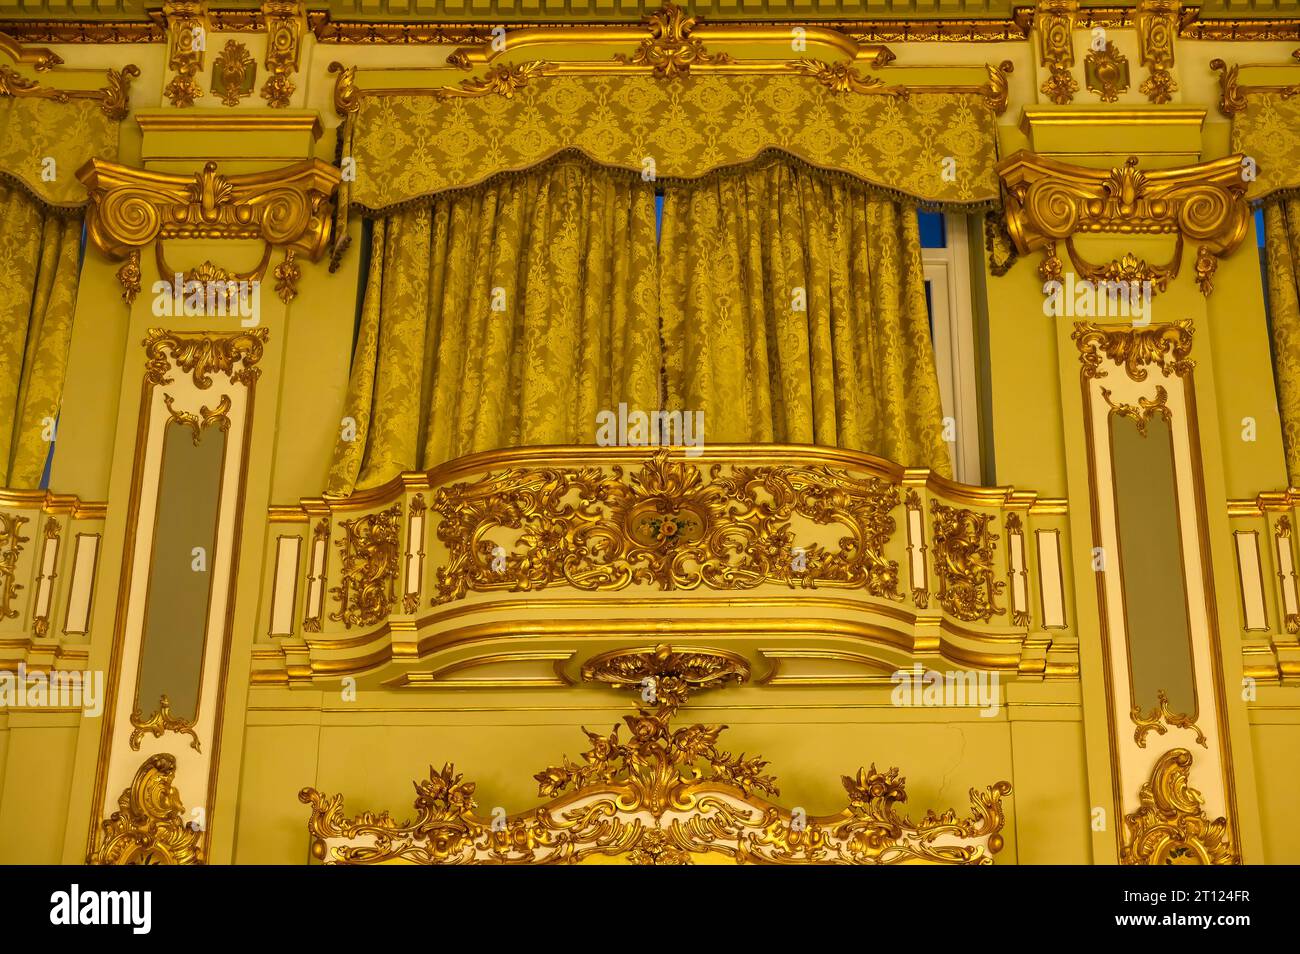 Innenbalkon mit Vorhanghalter. Goldfarbene, luxuriöse Einrichtung in der Architektur eines Innenraums. Stockfoto